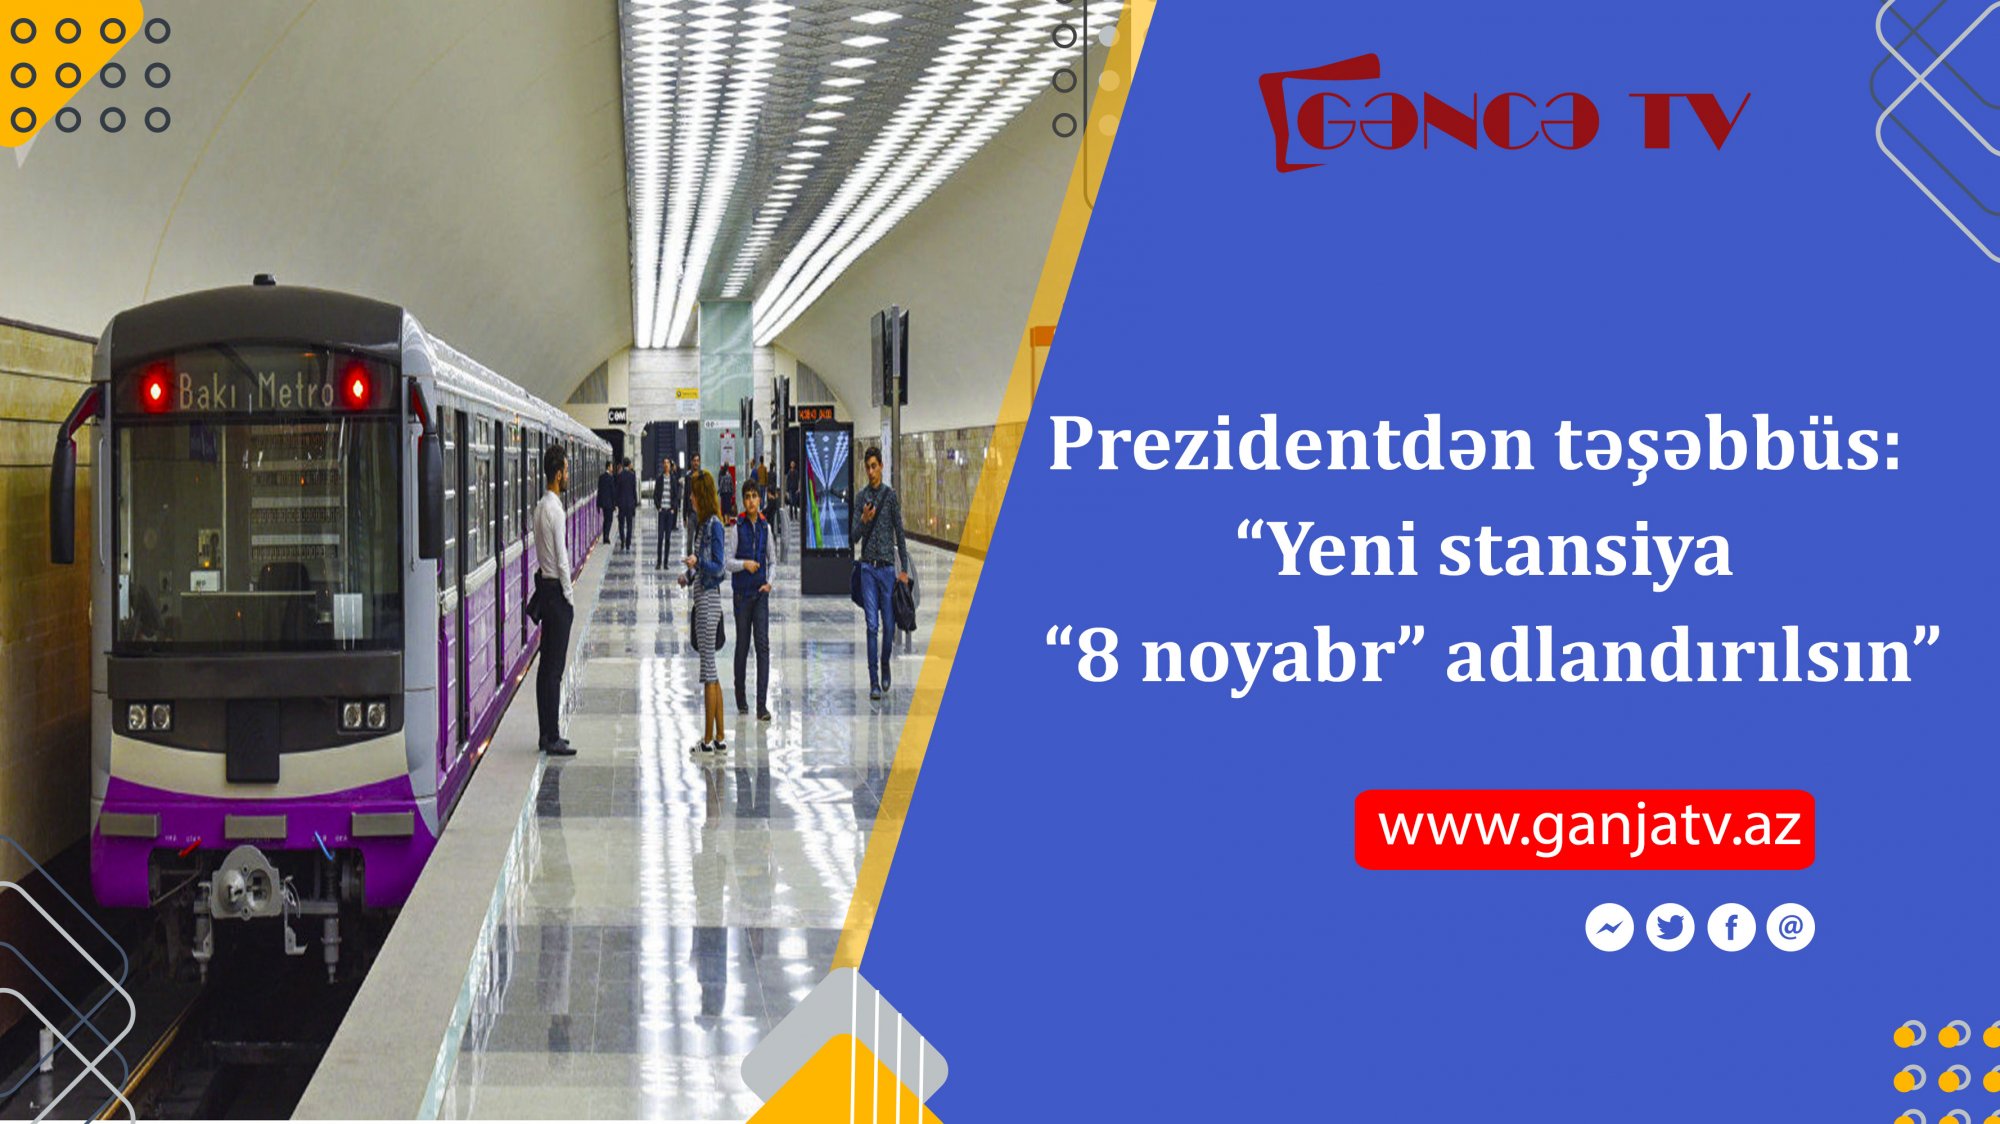 Prezidentdən təşəbbüs: “Yeni stansiya “8 noyabr” adlandırılsın”